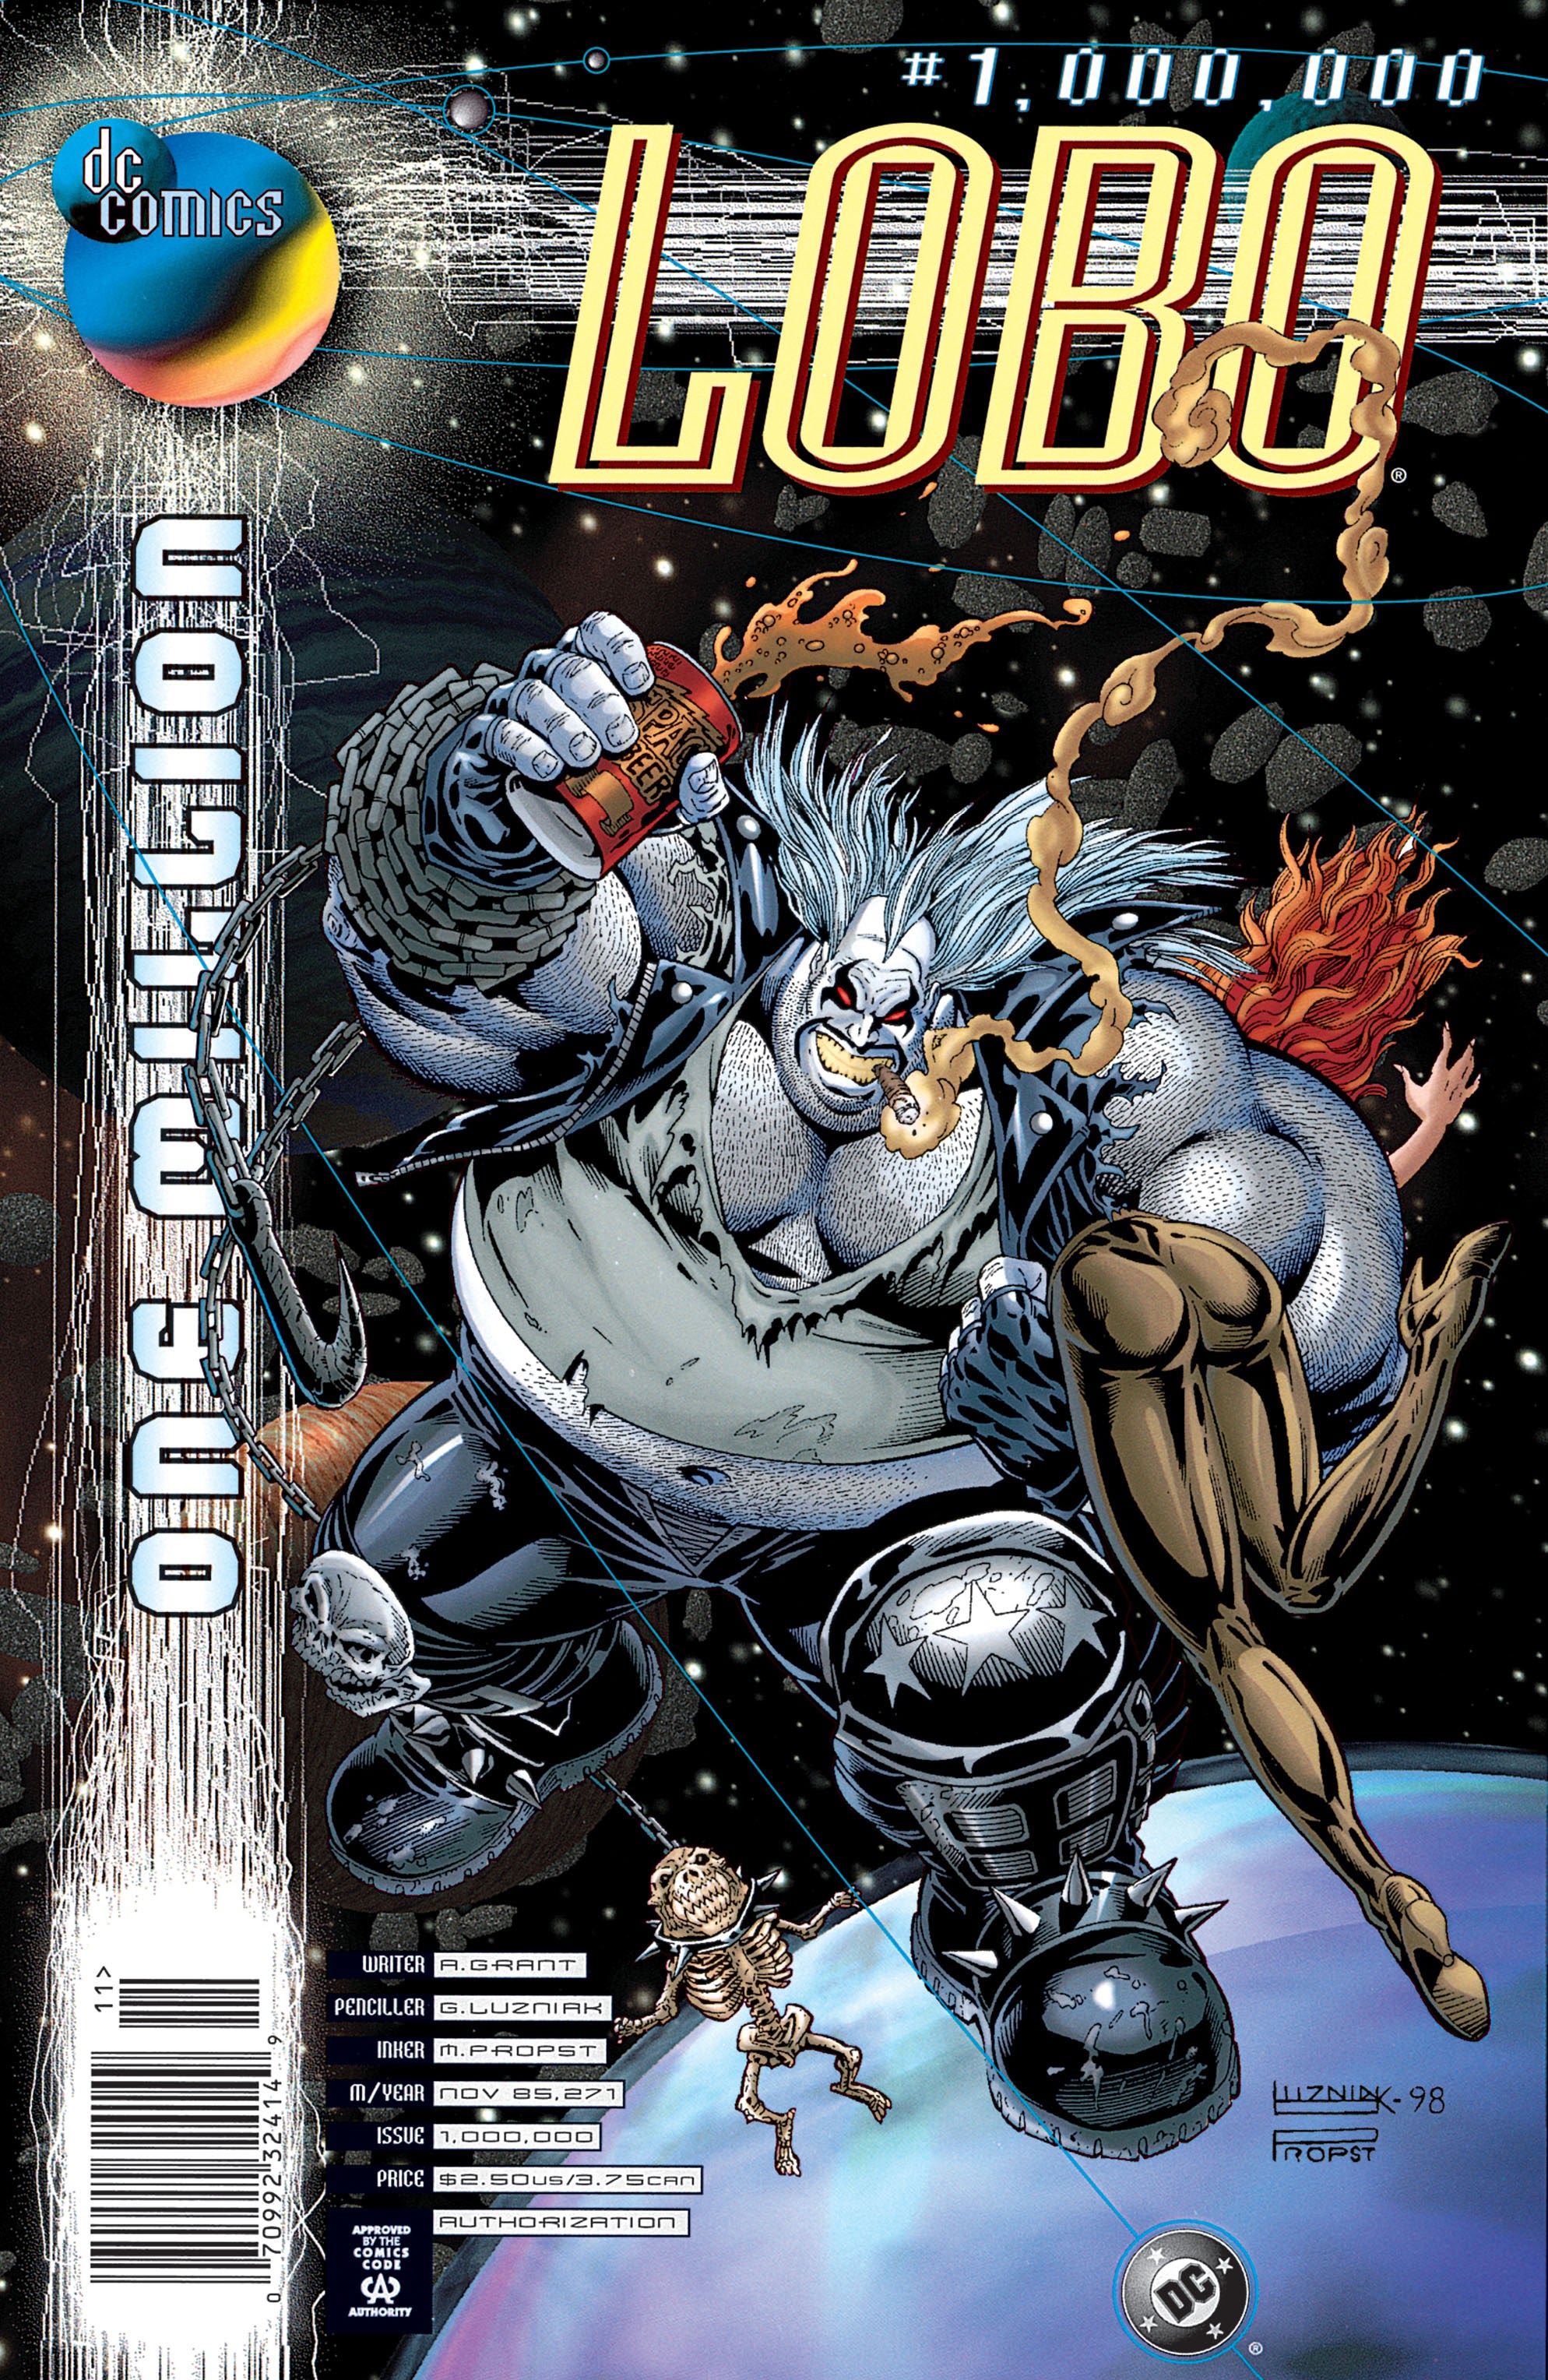 Read online Lobo (1993) comic -  Issue #1,000,000 - 1